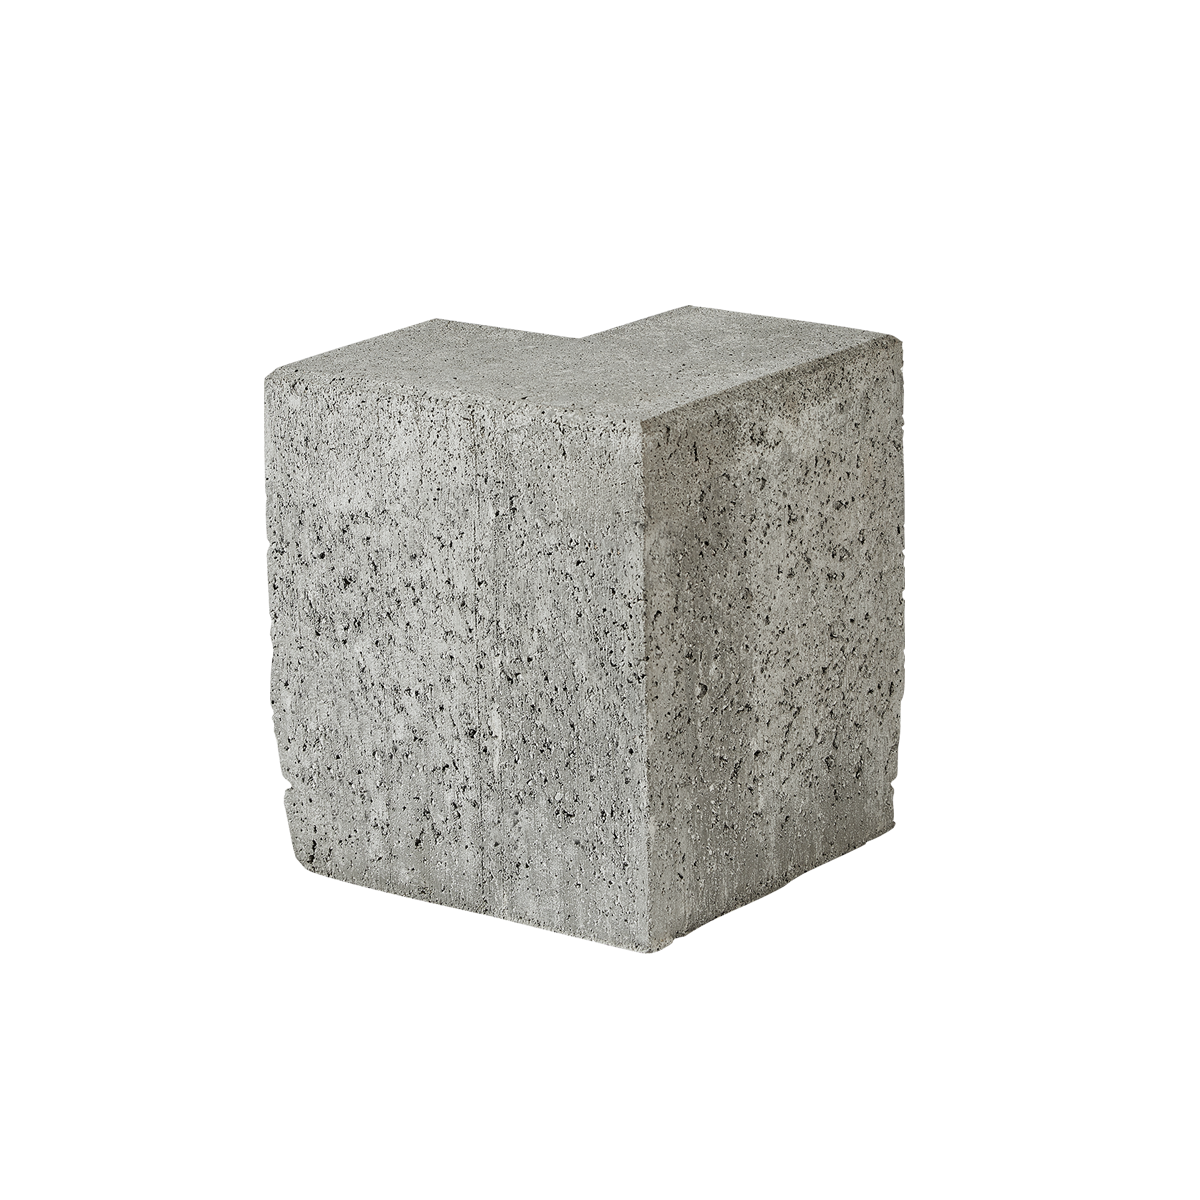 Albertslund-tiefbordrandsteine 15x30x25 cm Grau Ecke